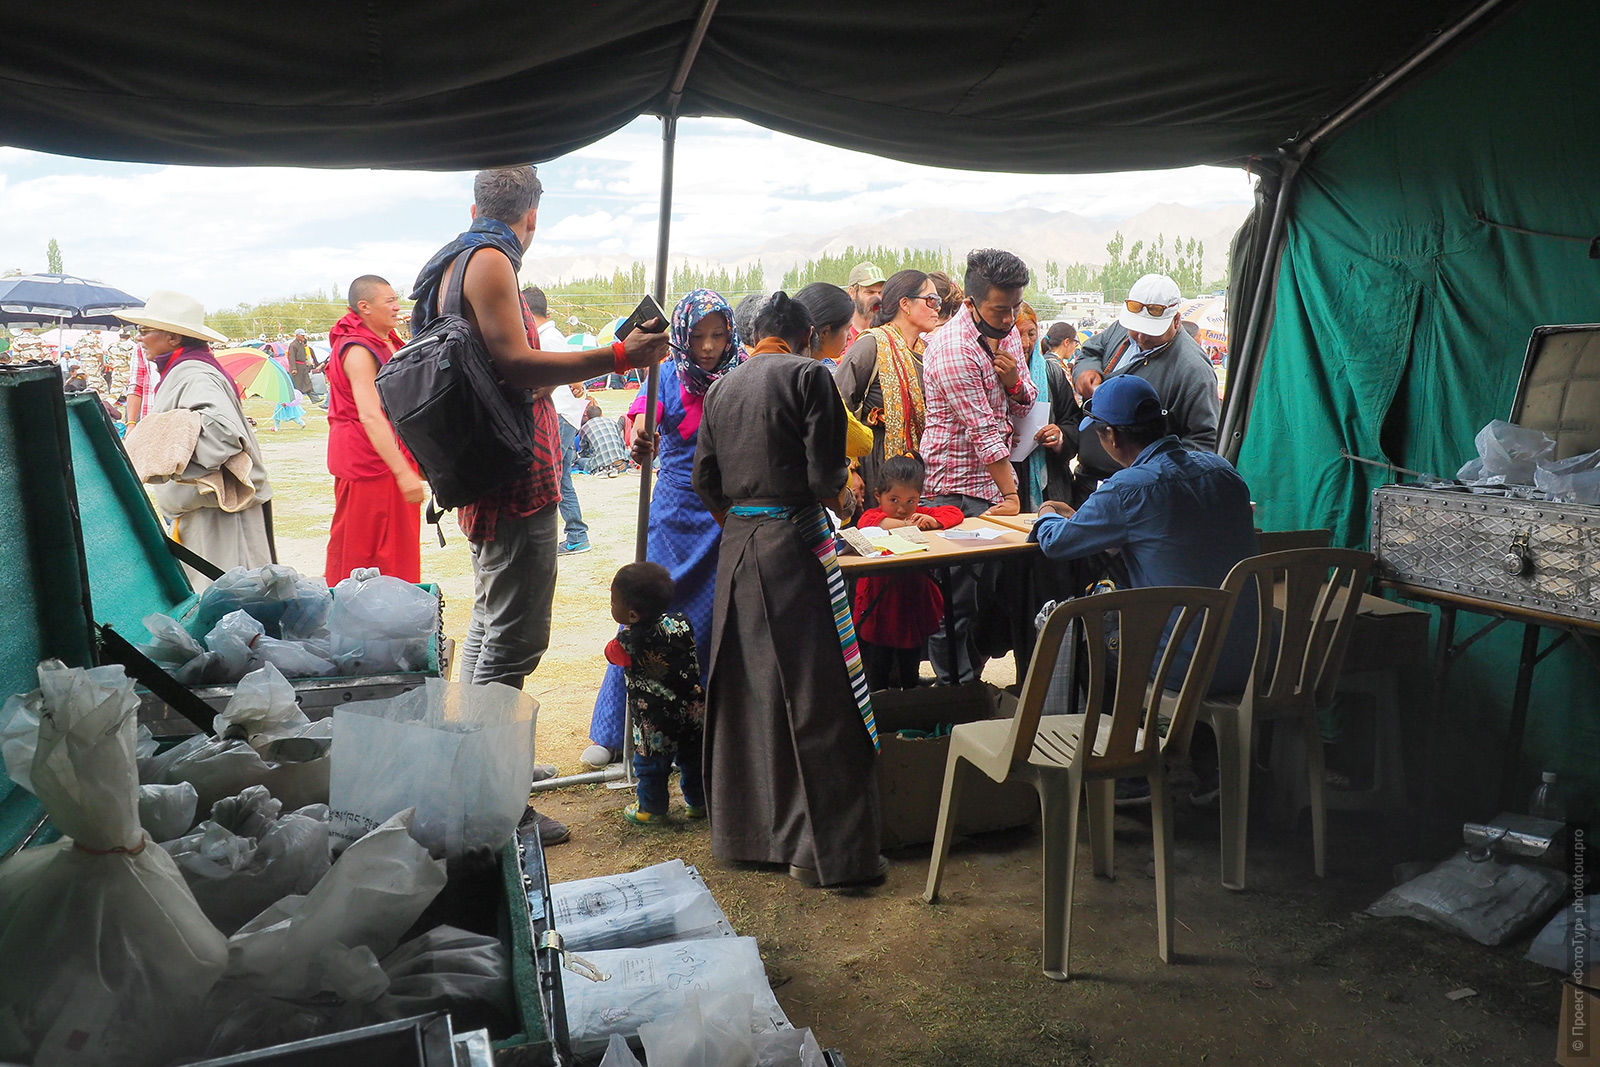 Палатки с медикаментами, Мен-ци-кханг, Чокламсар, Ладакх, август 2016 года.